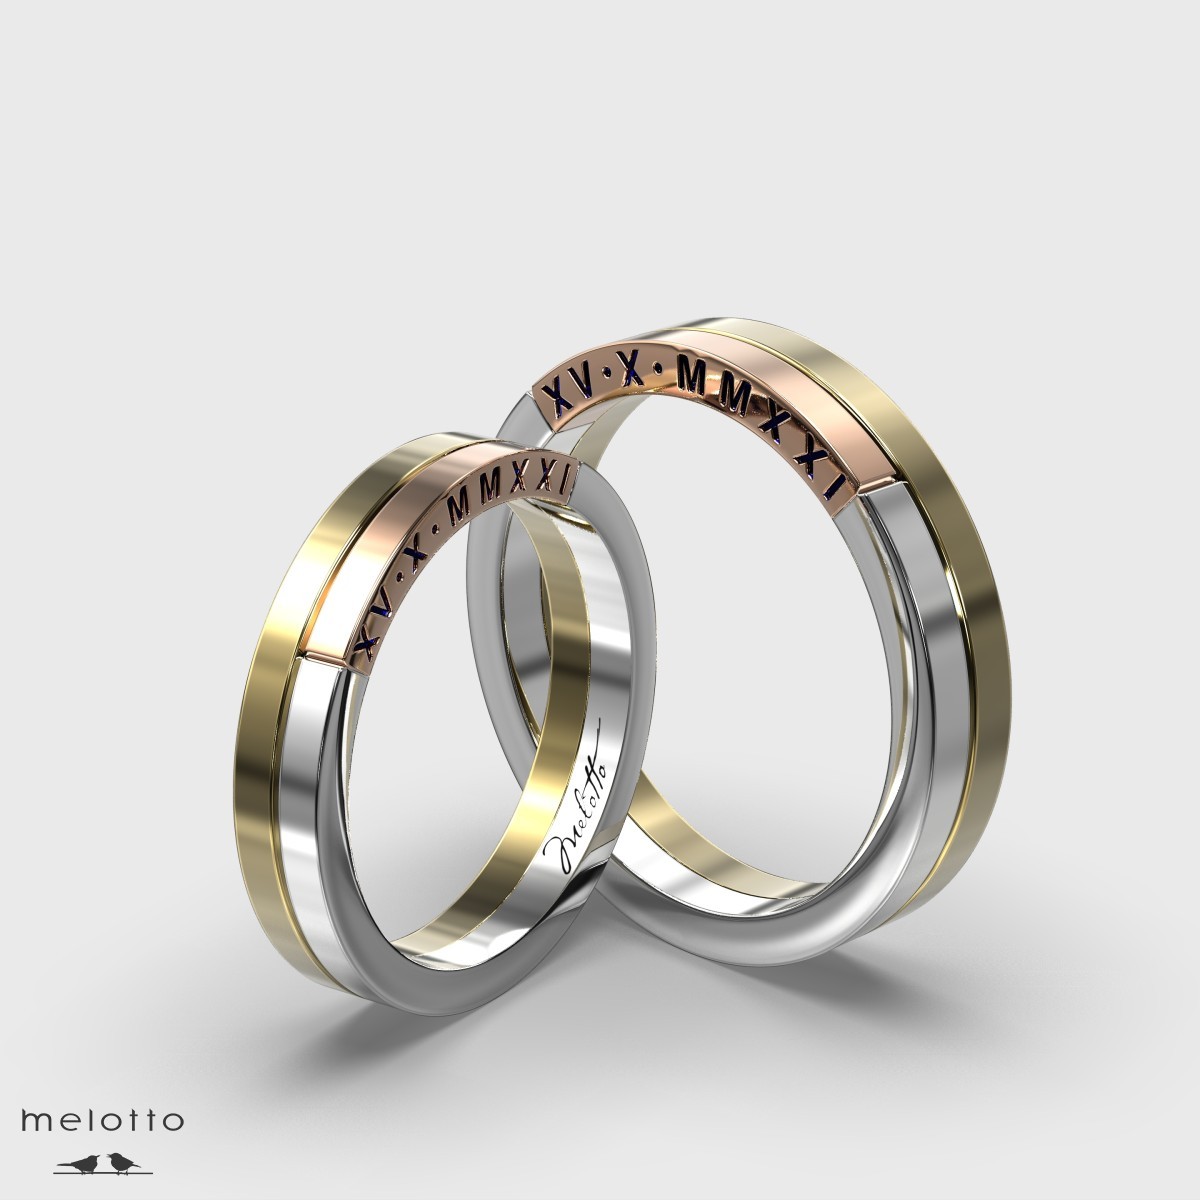 Трехцветные обручальные кольца Melotto с датой свадьбы